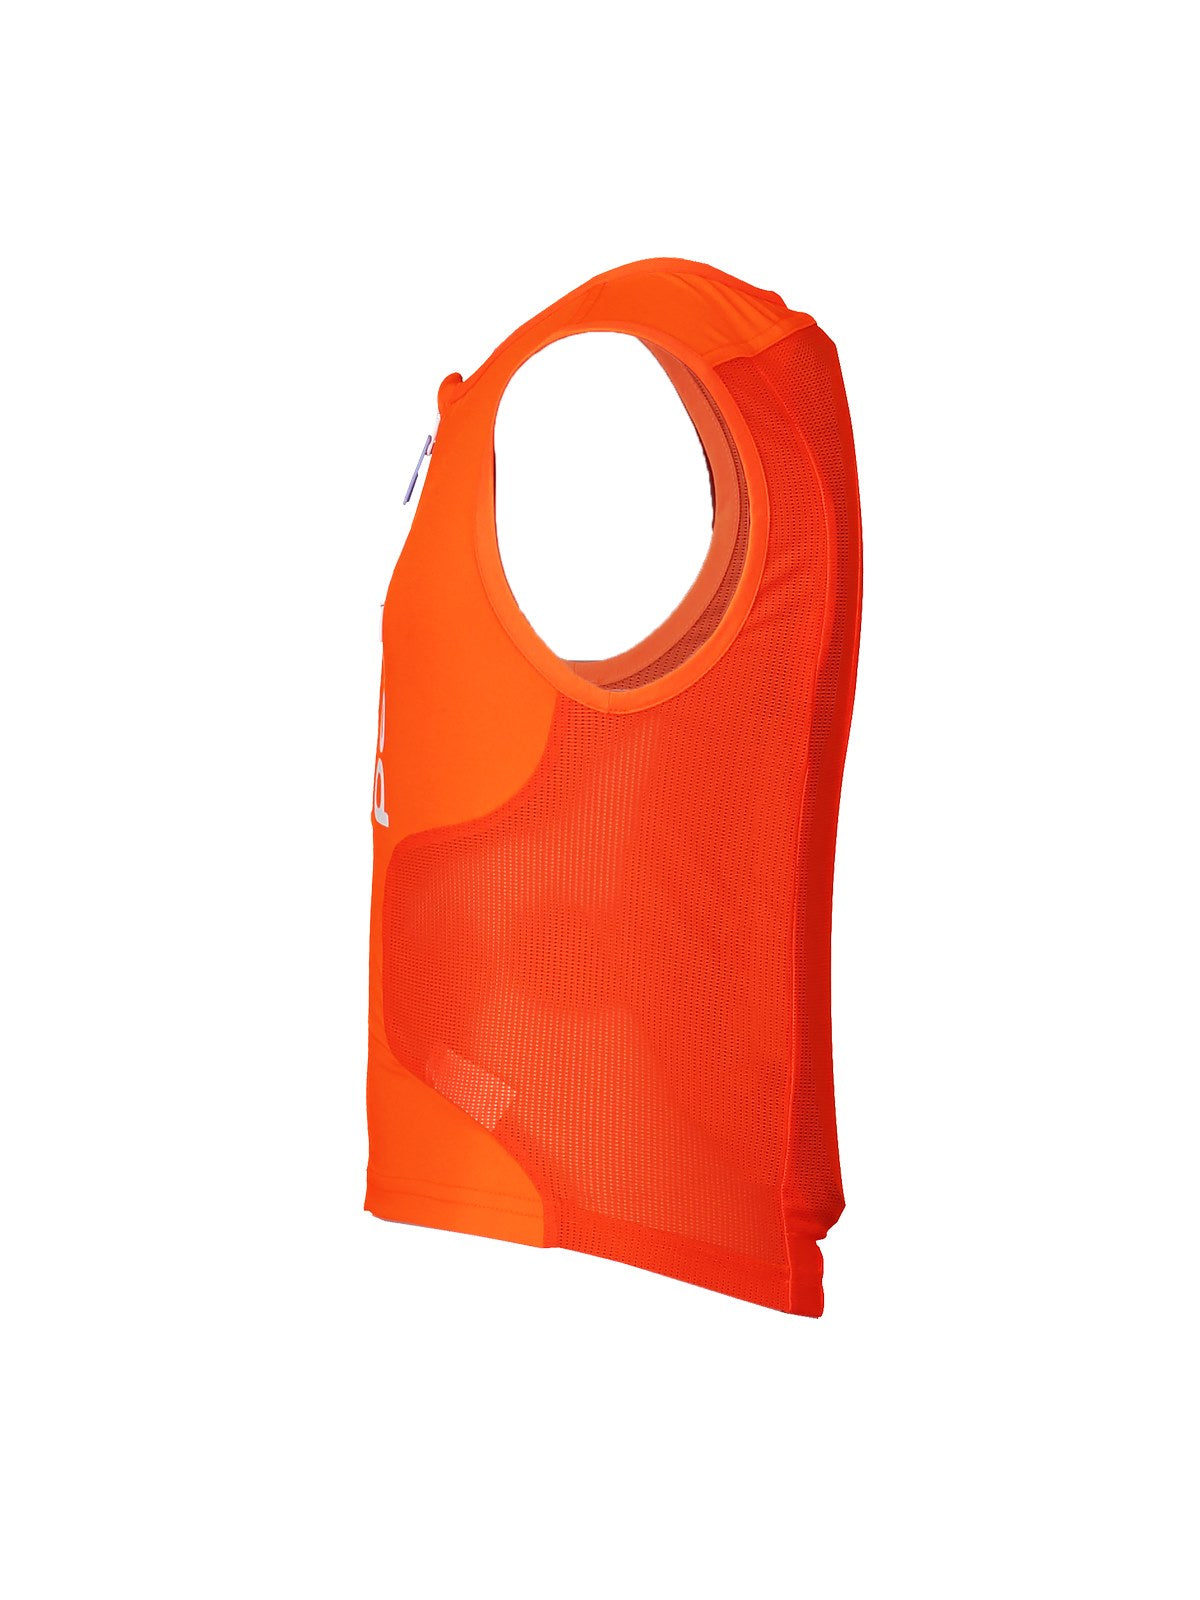 Kamizelka ochronna POCITO VPD AIR Vest - Fluo. Orange